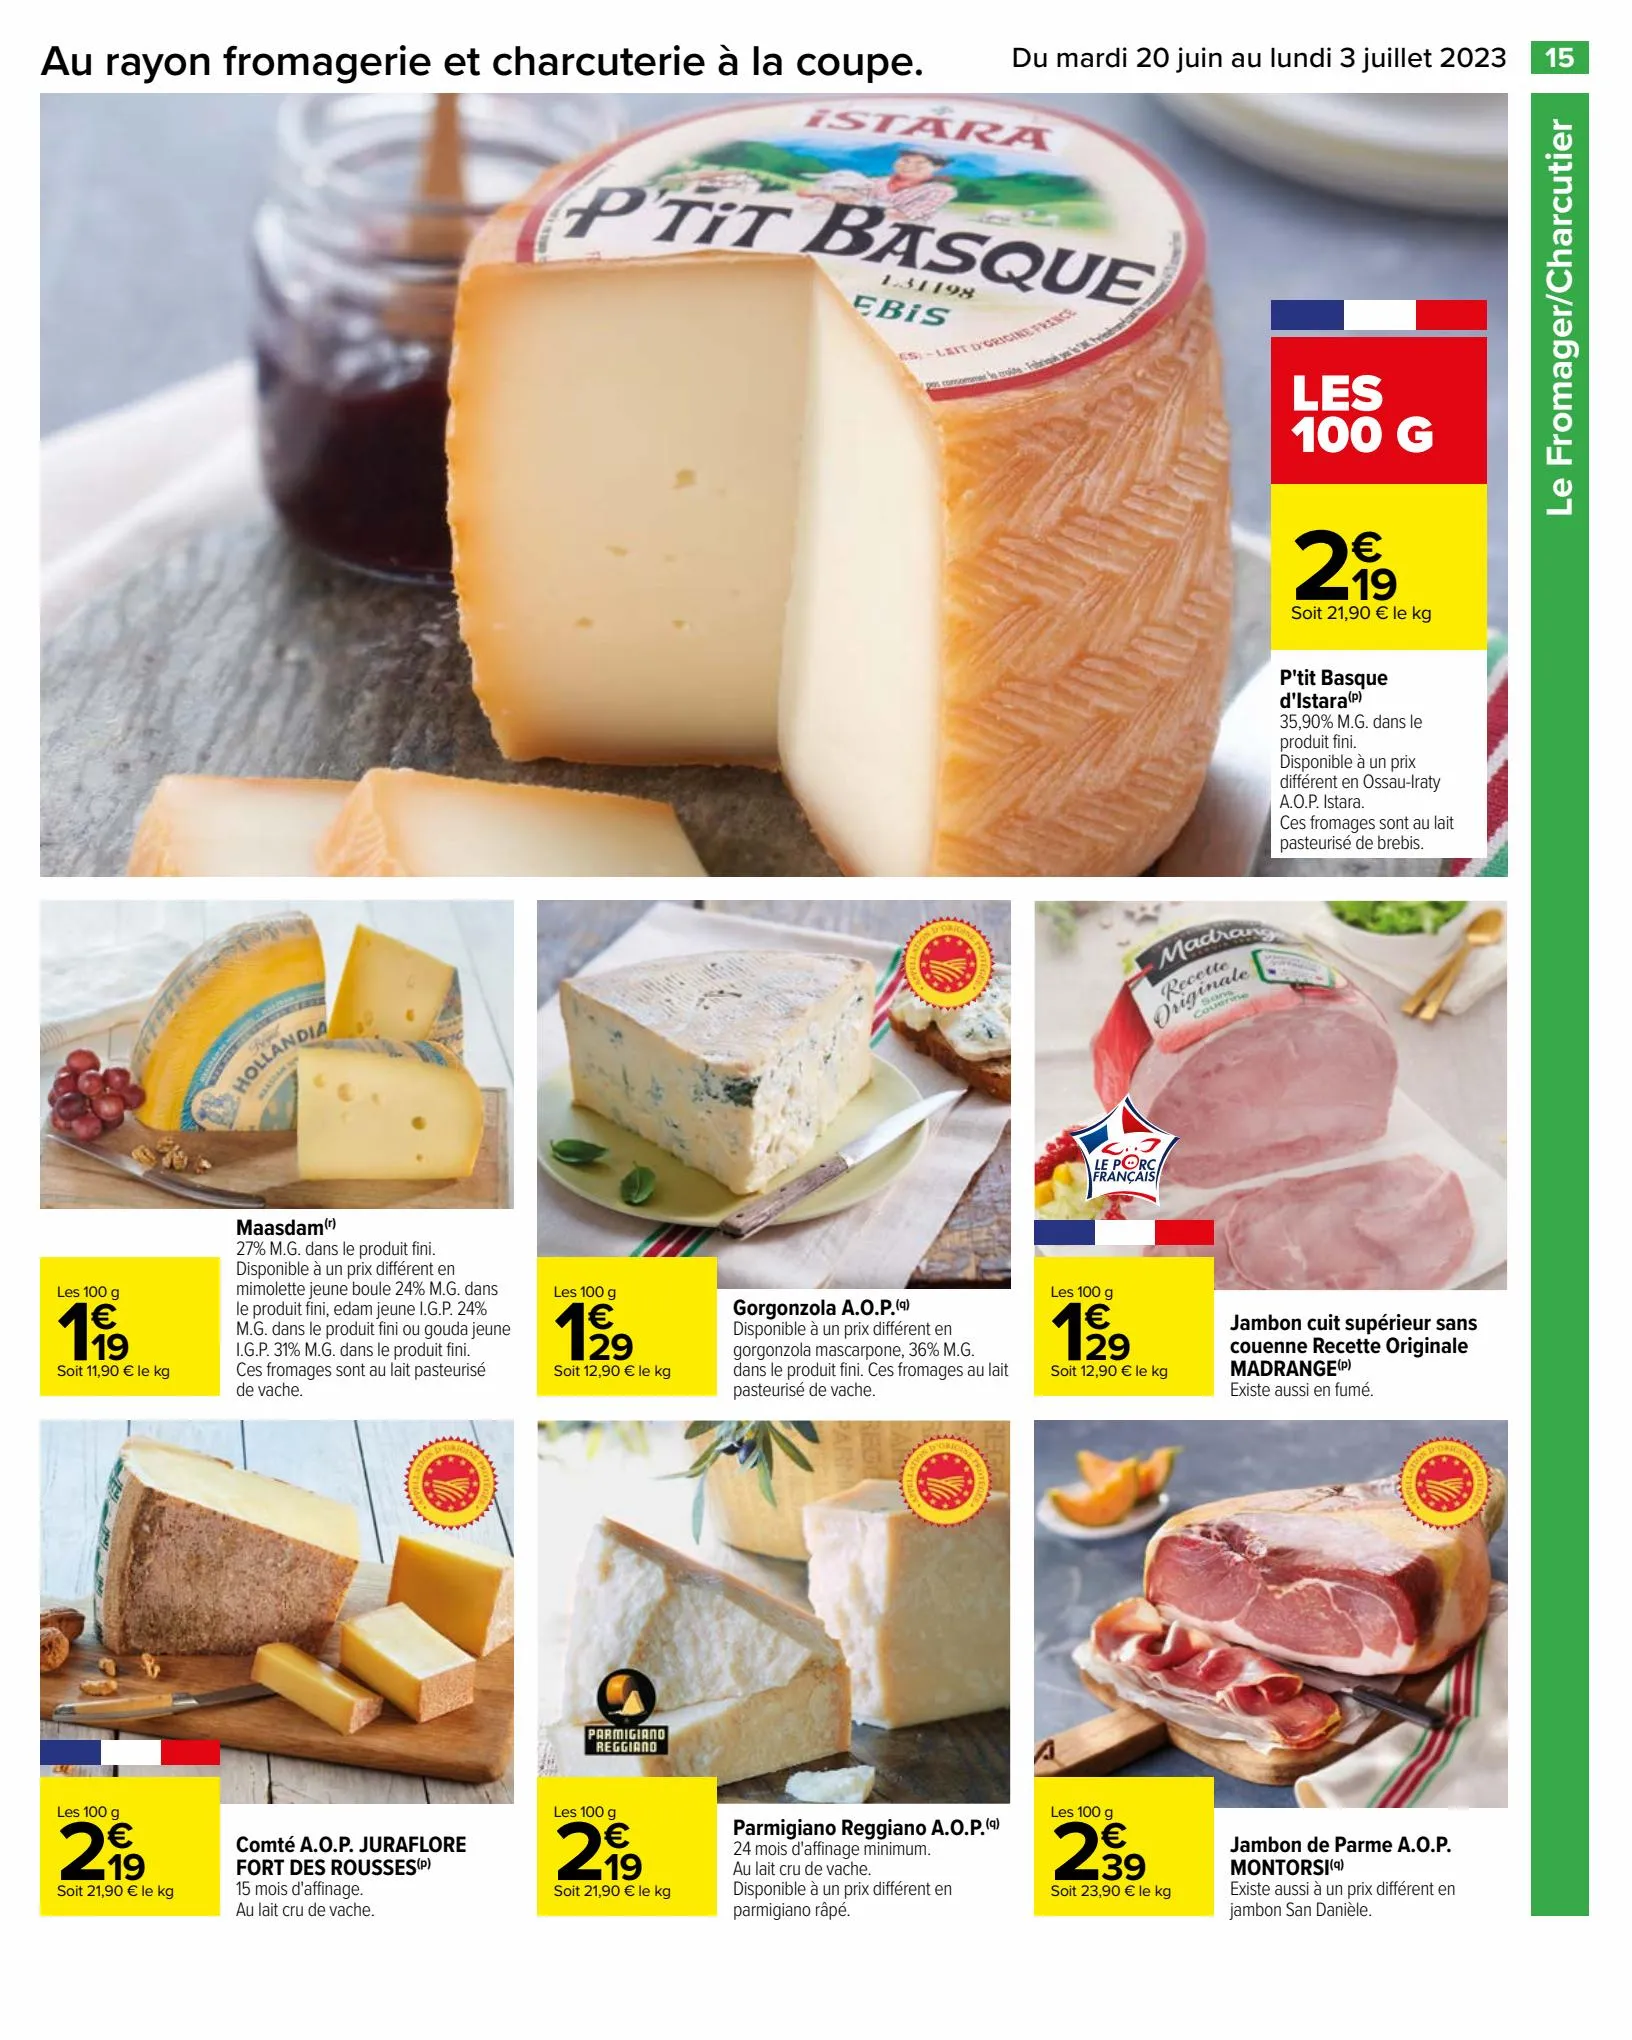 Catalogue Des promos pleines de saveurs, page 00017